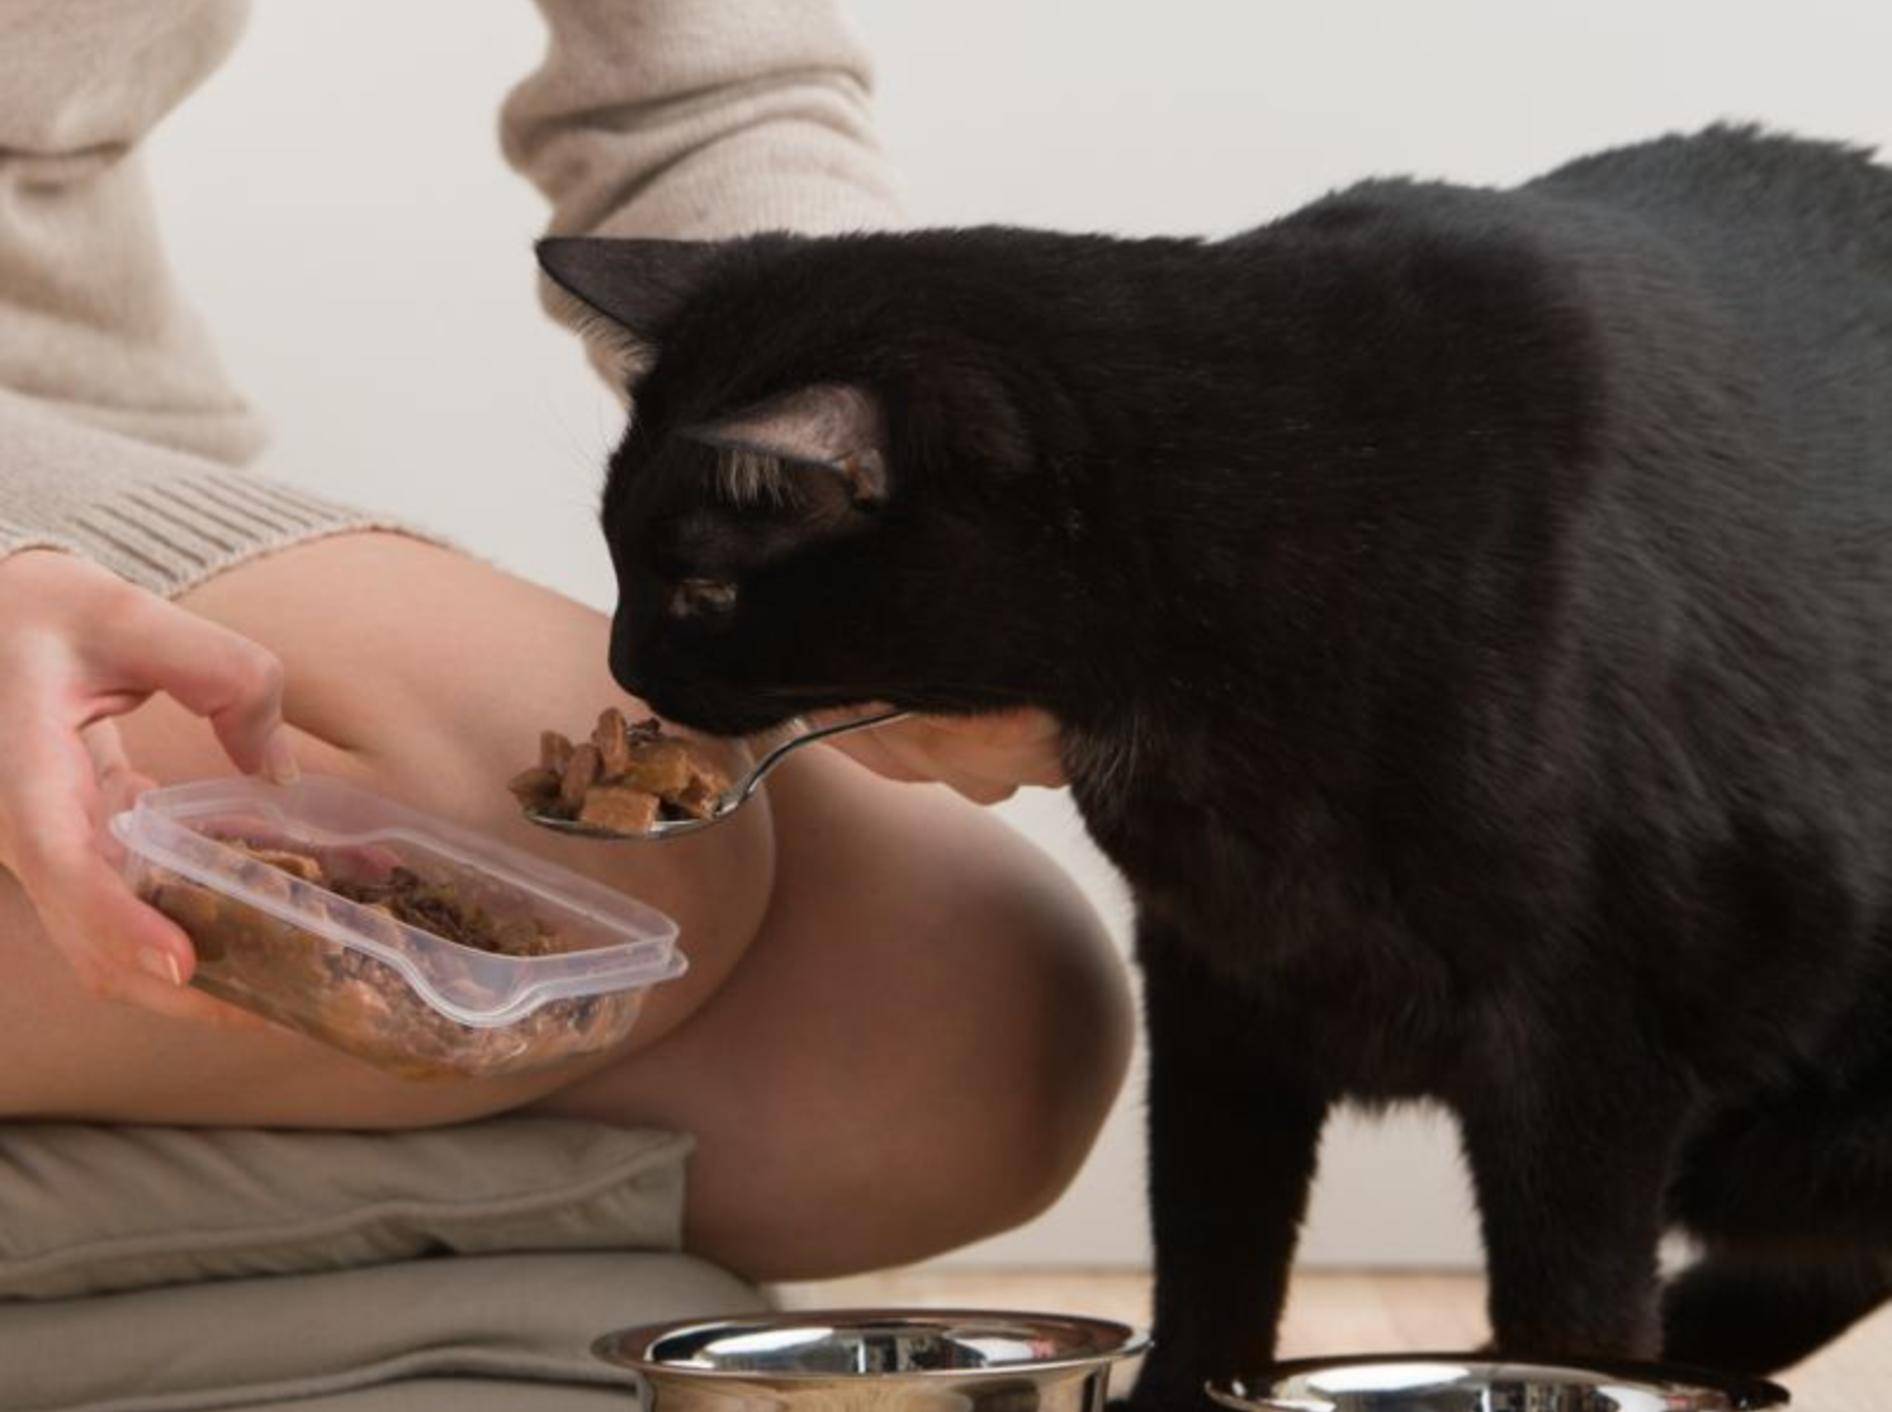 Eine zugelaufene Katze sollten Sie nur unter bestimmten Bedingungen füttern – Bild: Shutterstock / Hasloo Group Production Studio